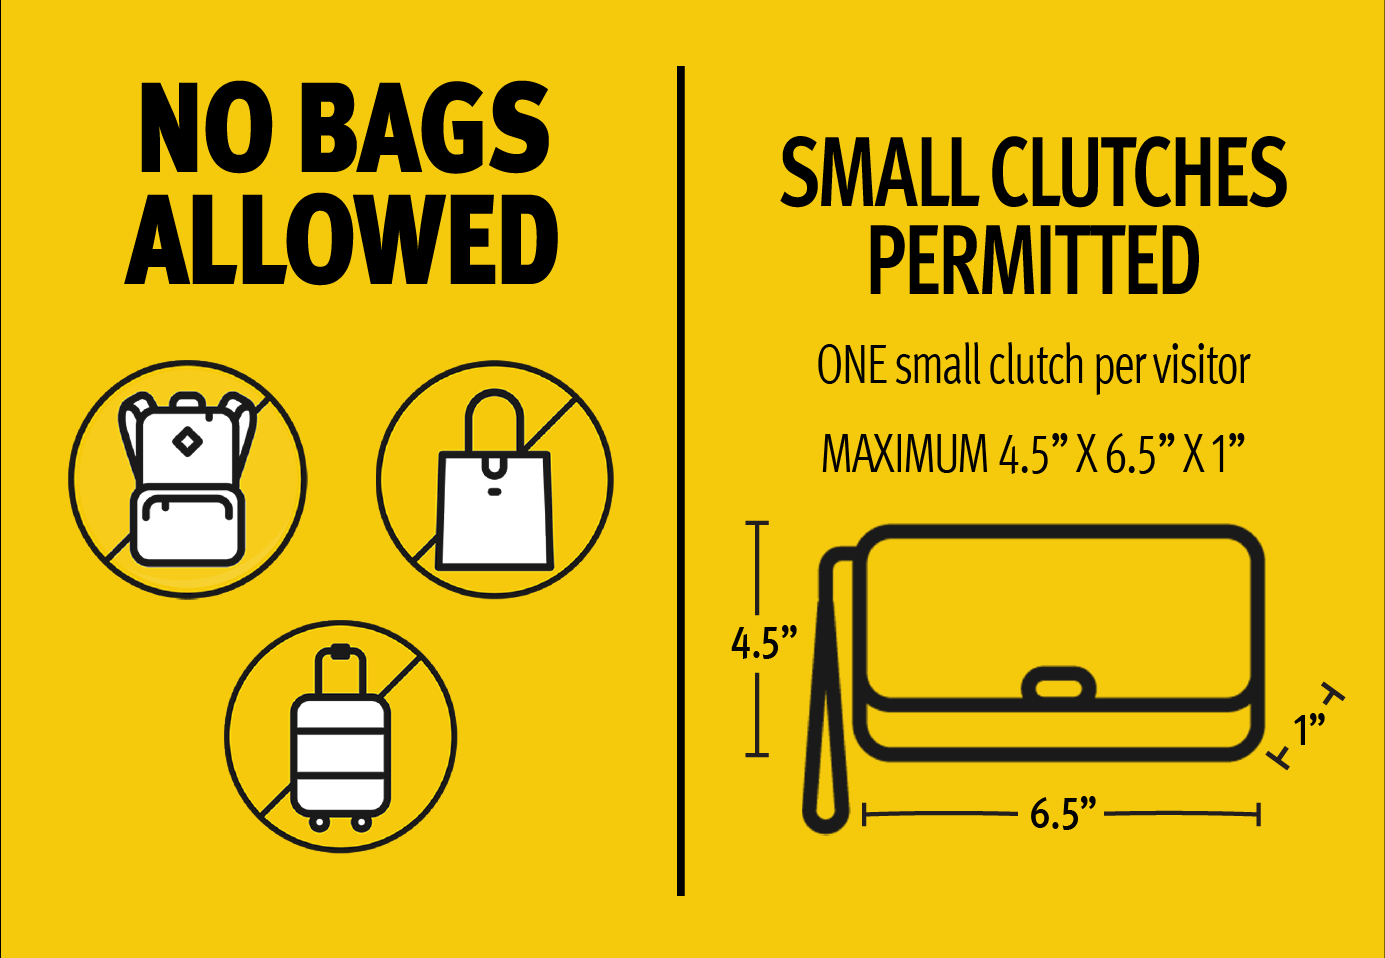 Kia Center Bag Policy